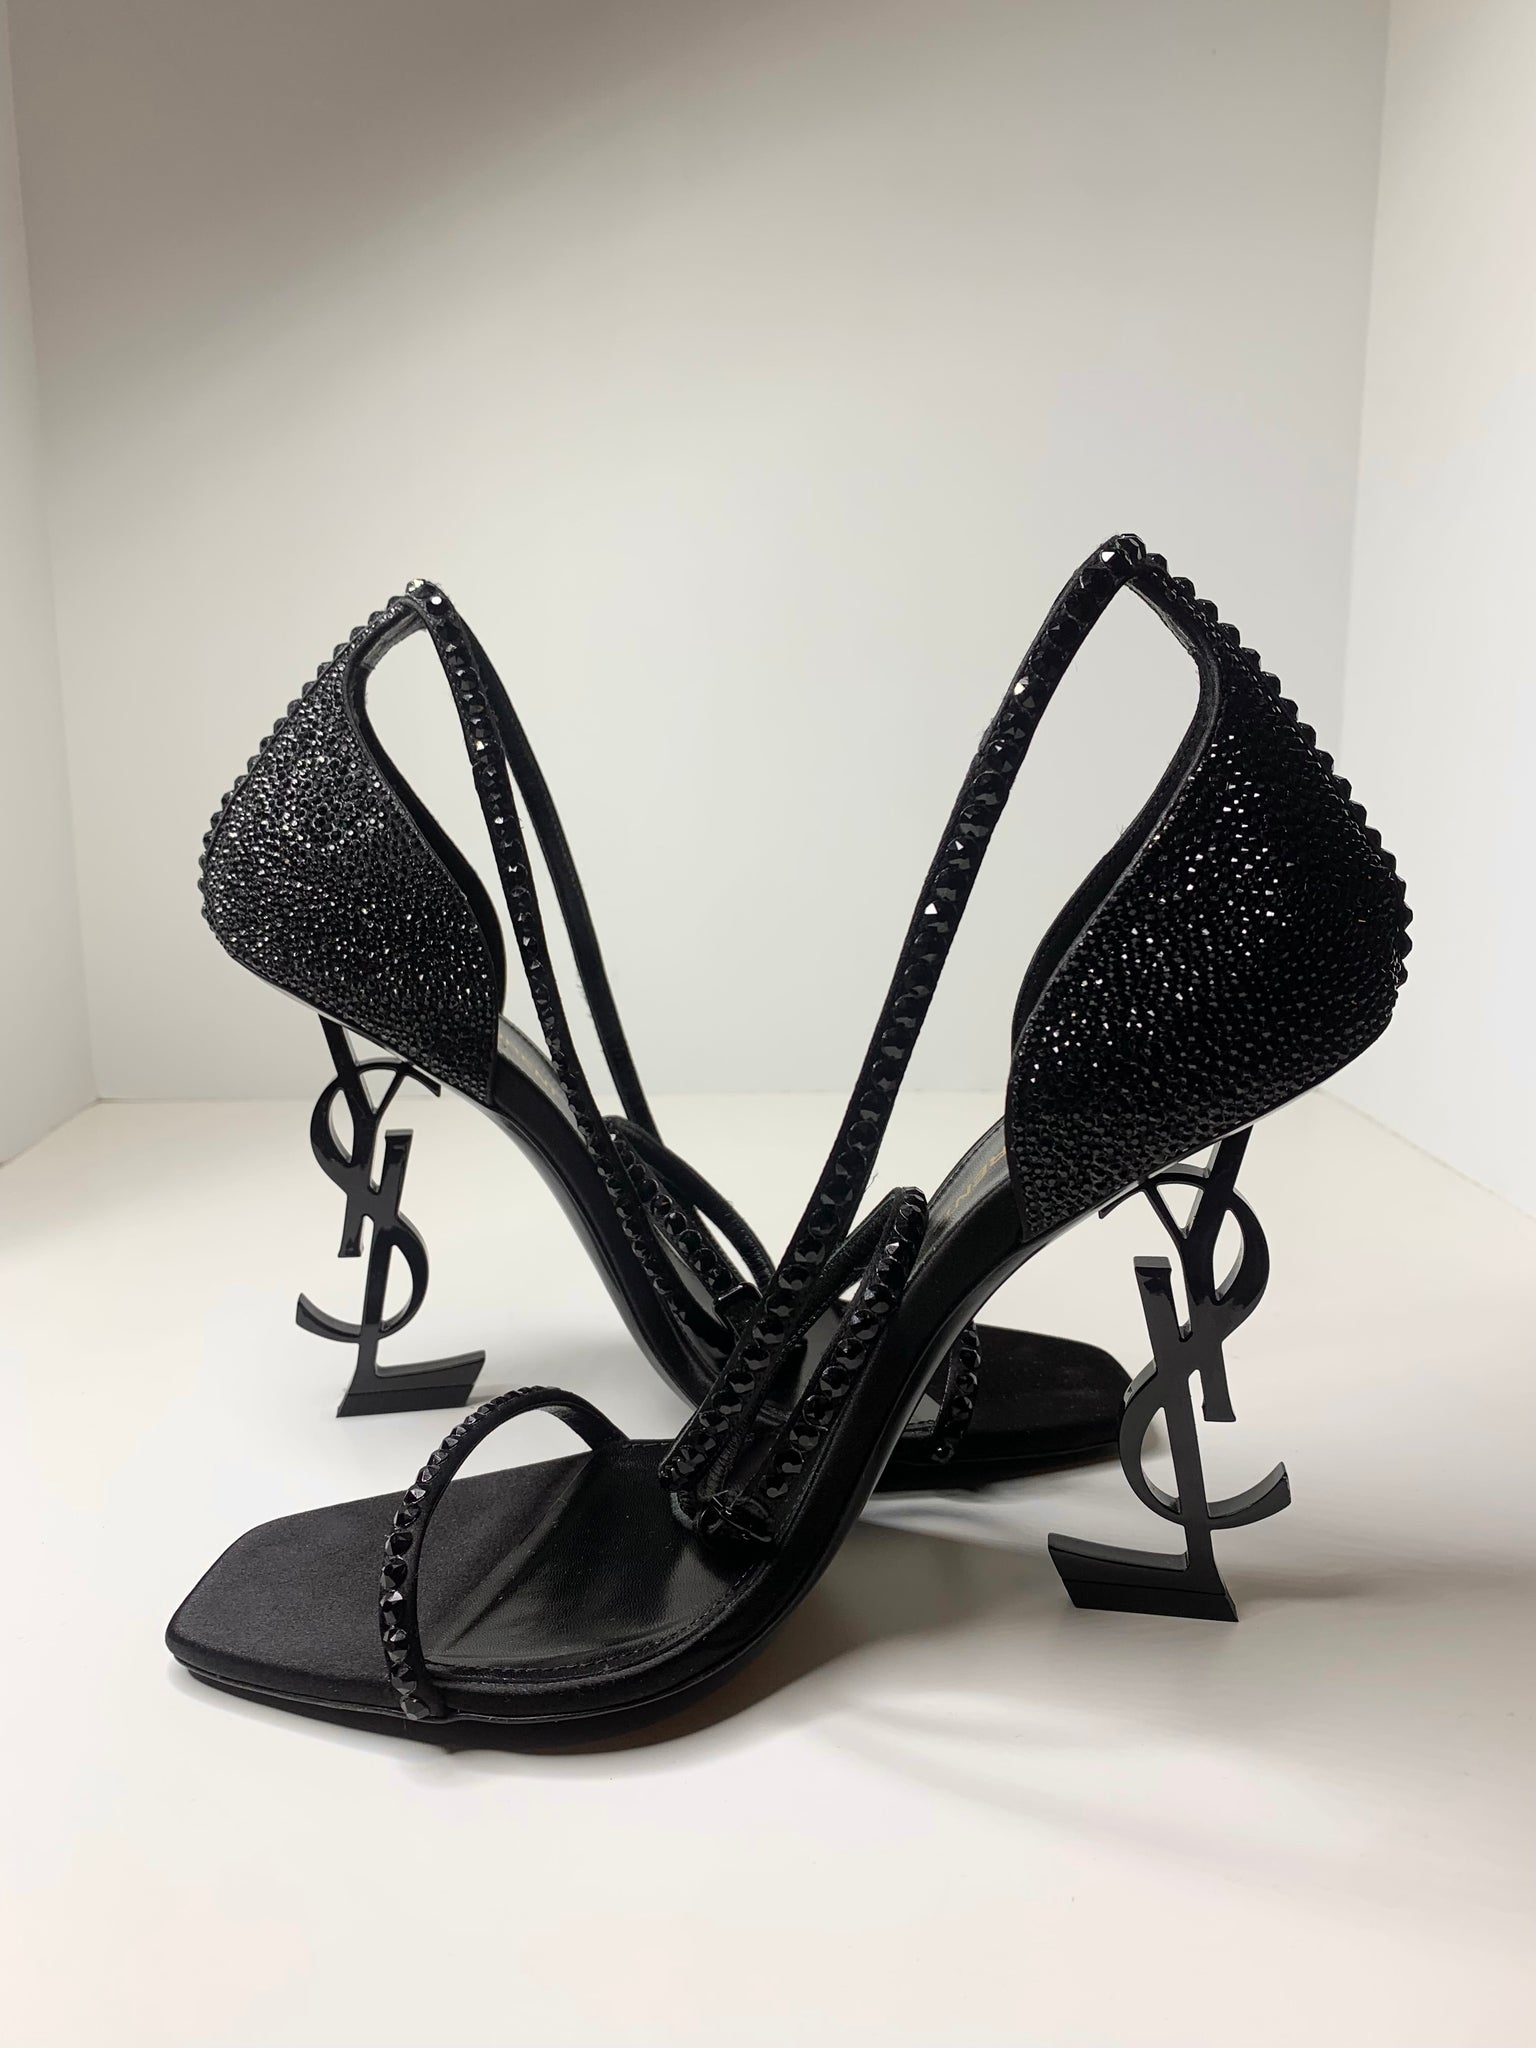 Black Opyum 110 leather sandals, Saint Laurent